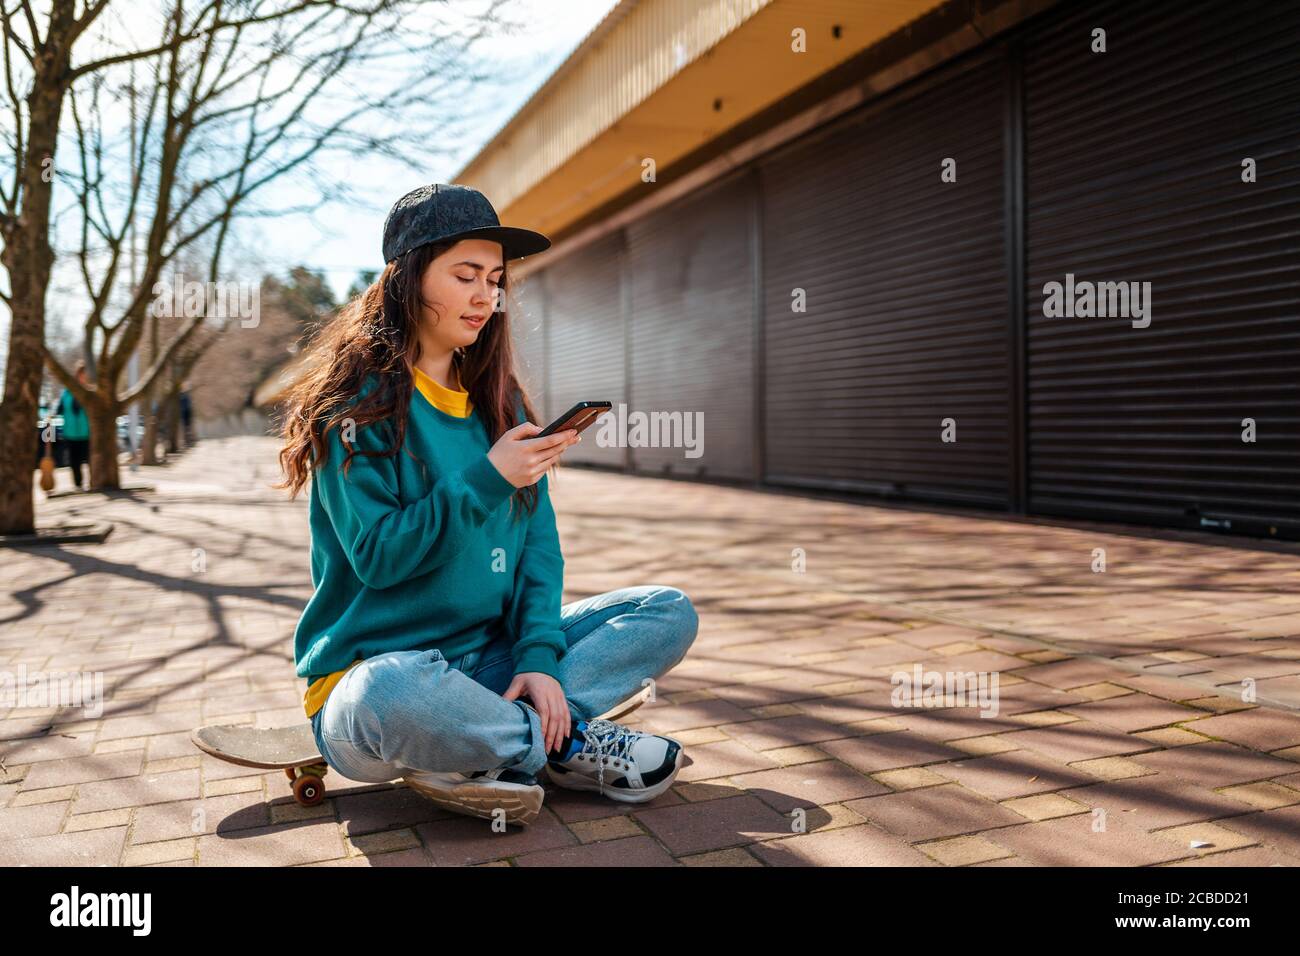 Une jeune femme vêtue de vêtements décontractés est assise sur une planche à roulettes et utilise un smartphone. Rue en arrière-plan. Technologie et communication Banque D'Images